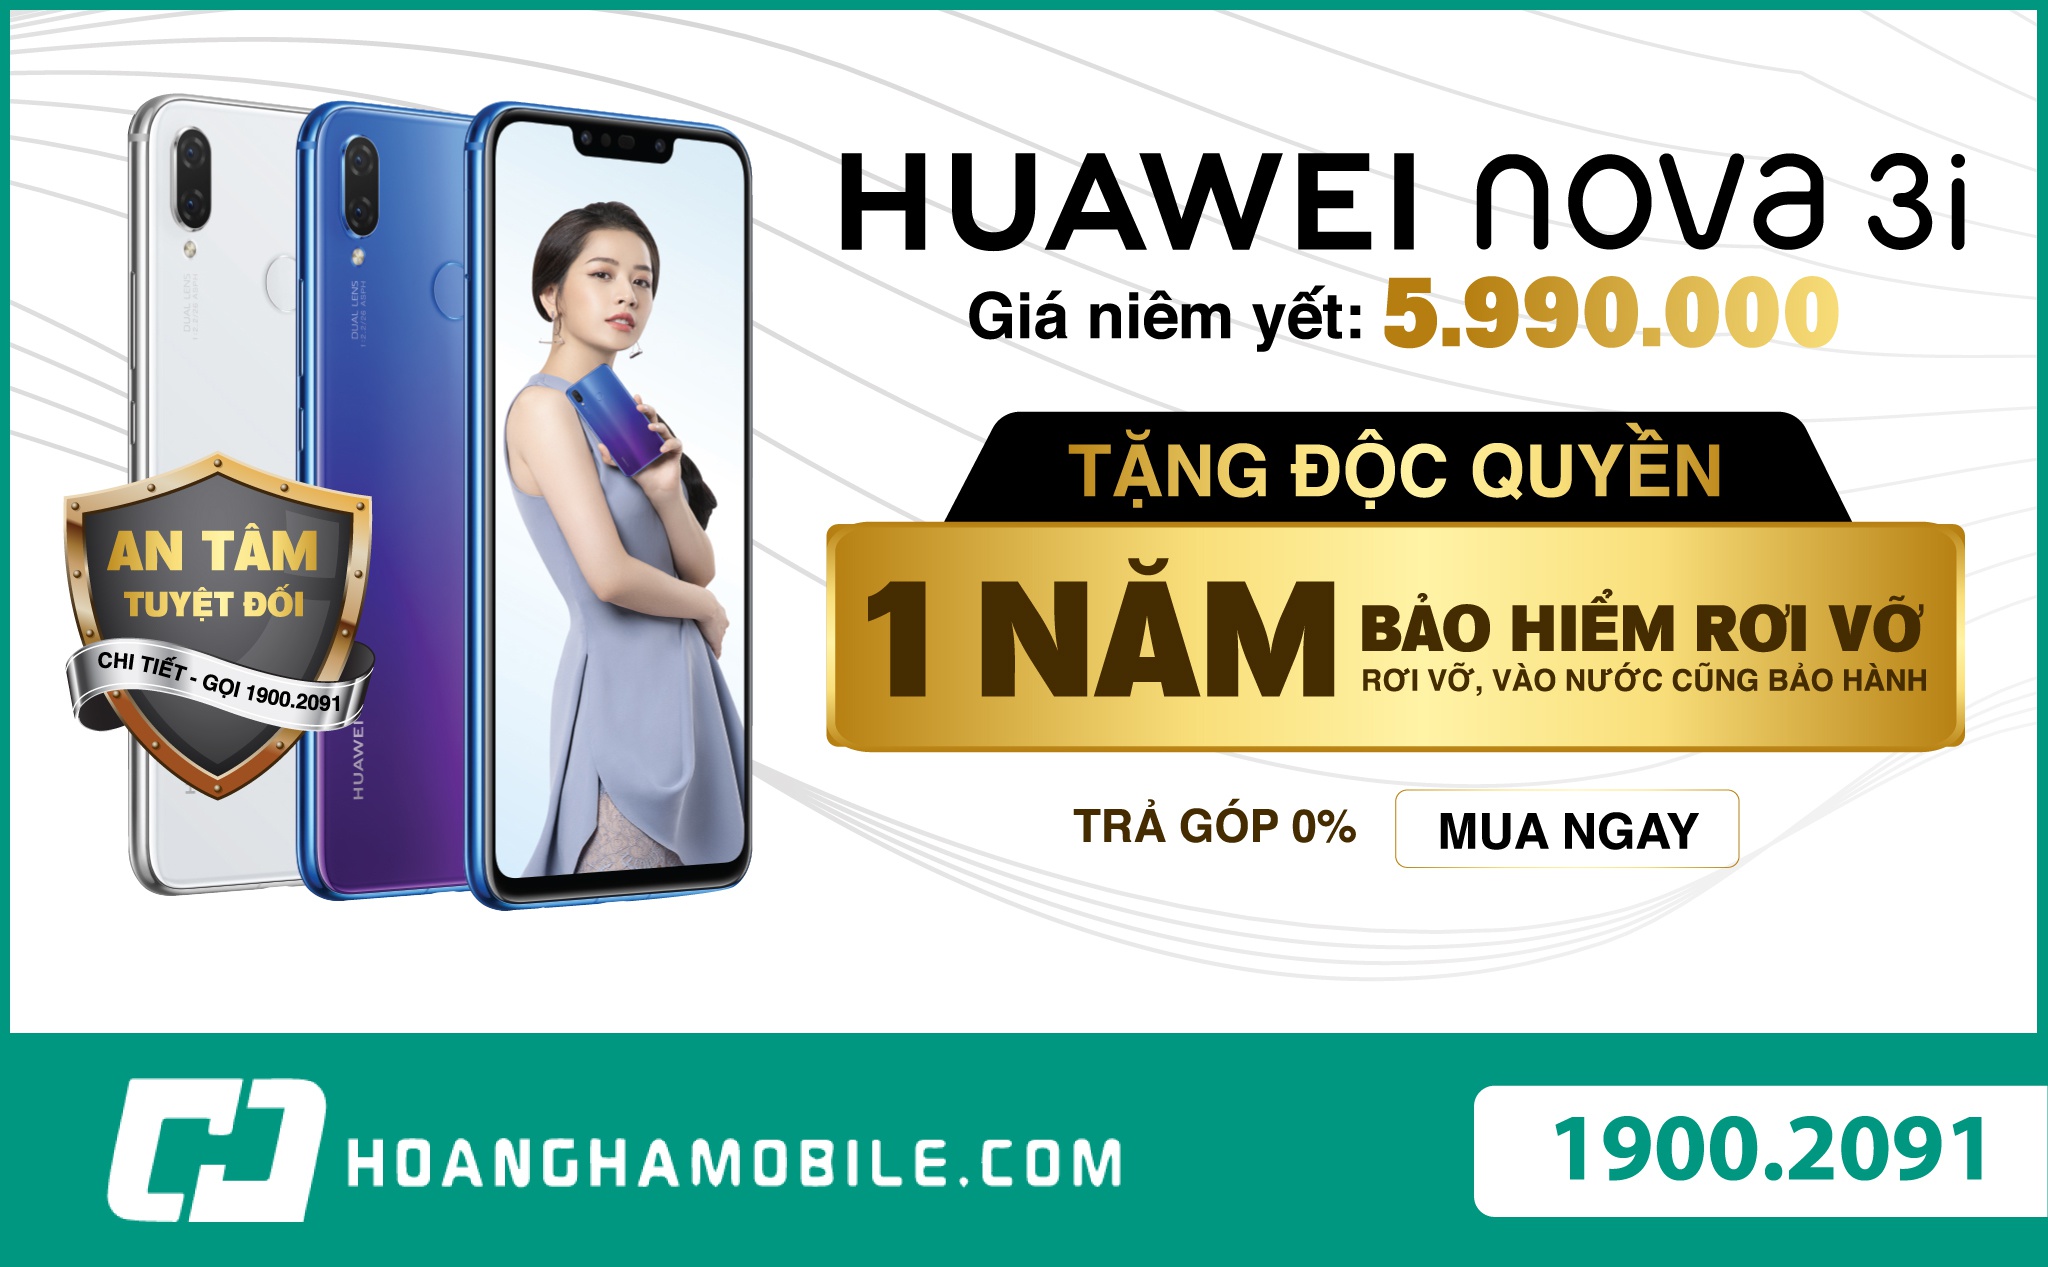 [QC] Huawei Nova 3i lần đầu nhận đặc quyền cực khủng